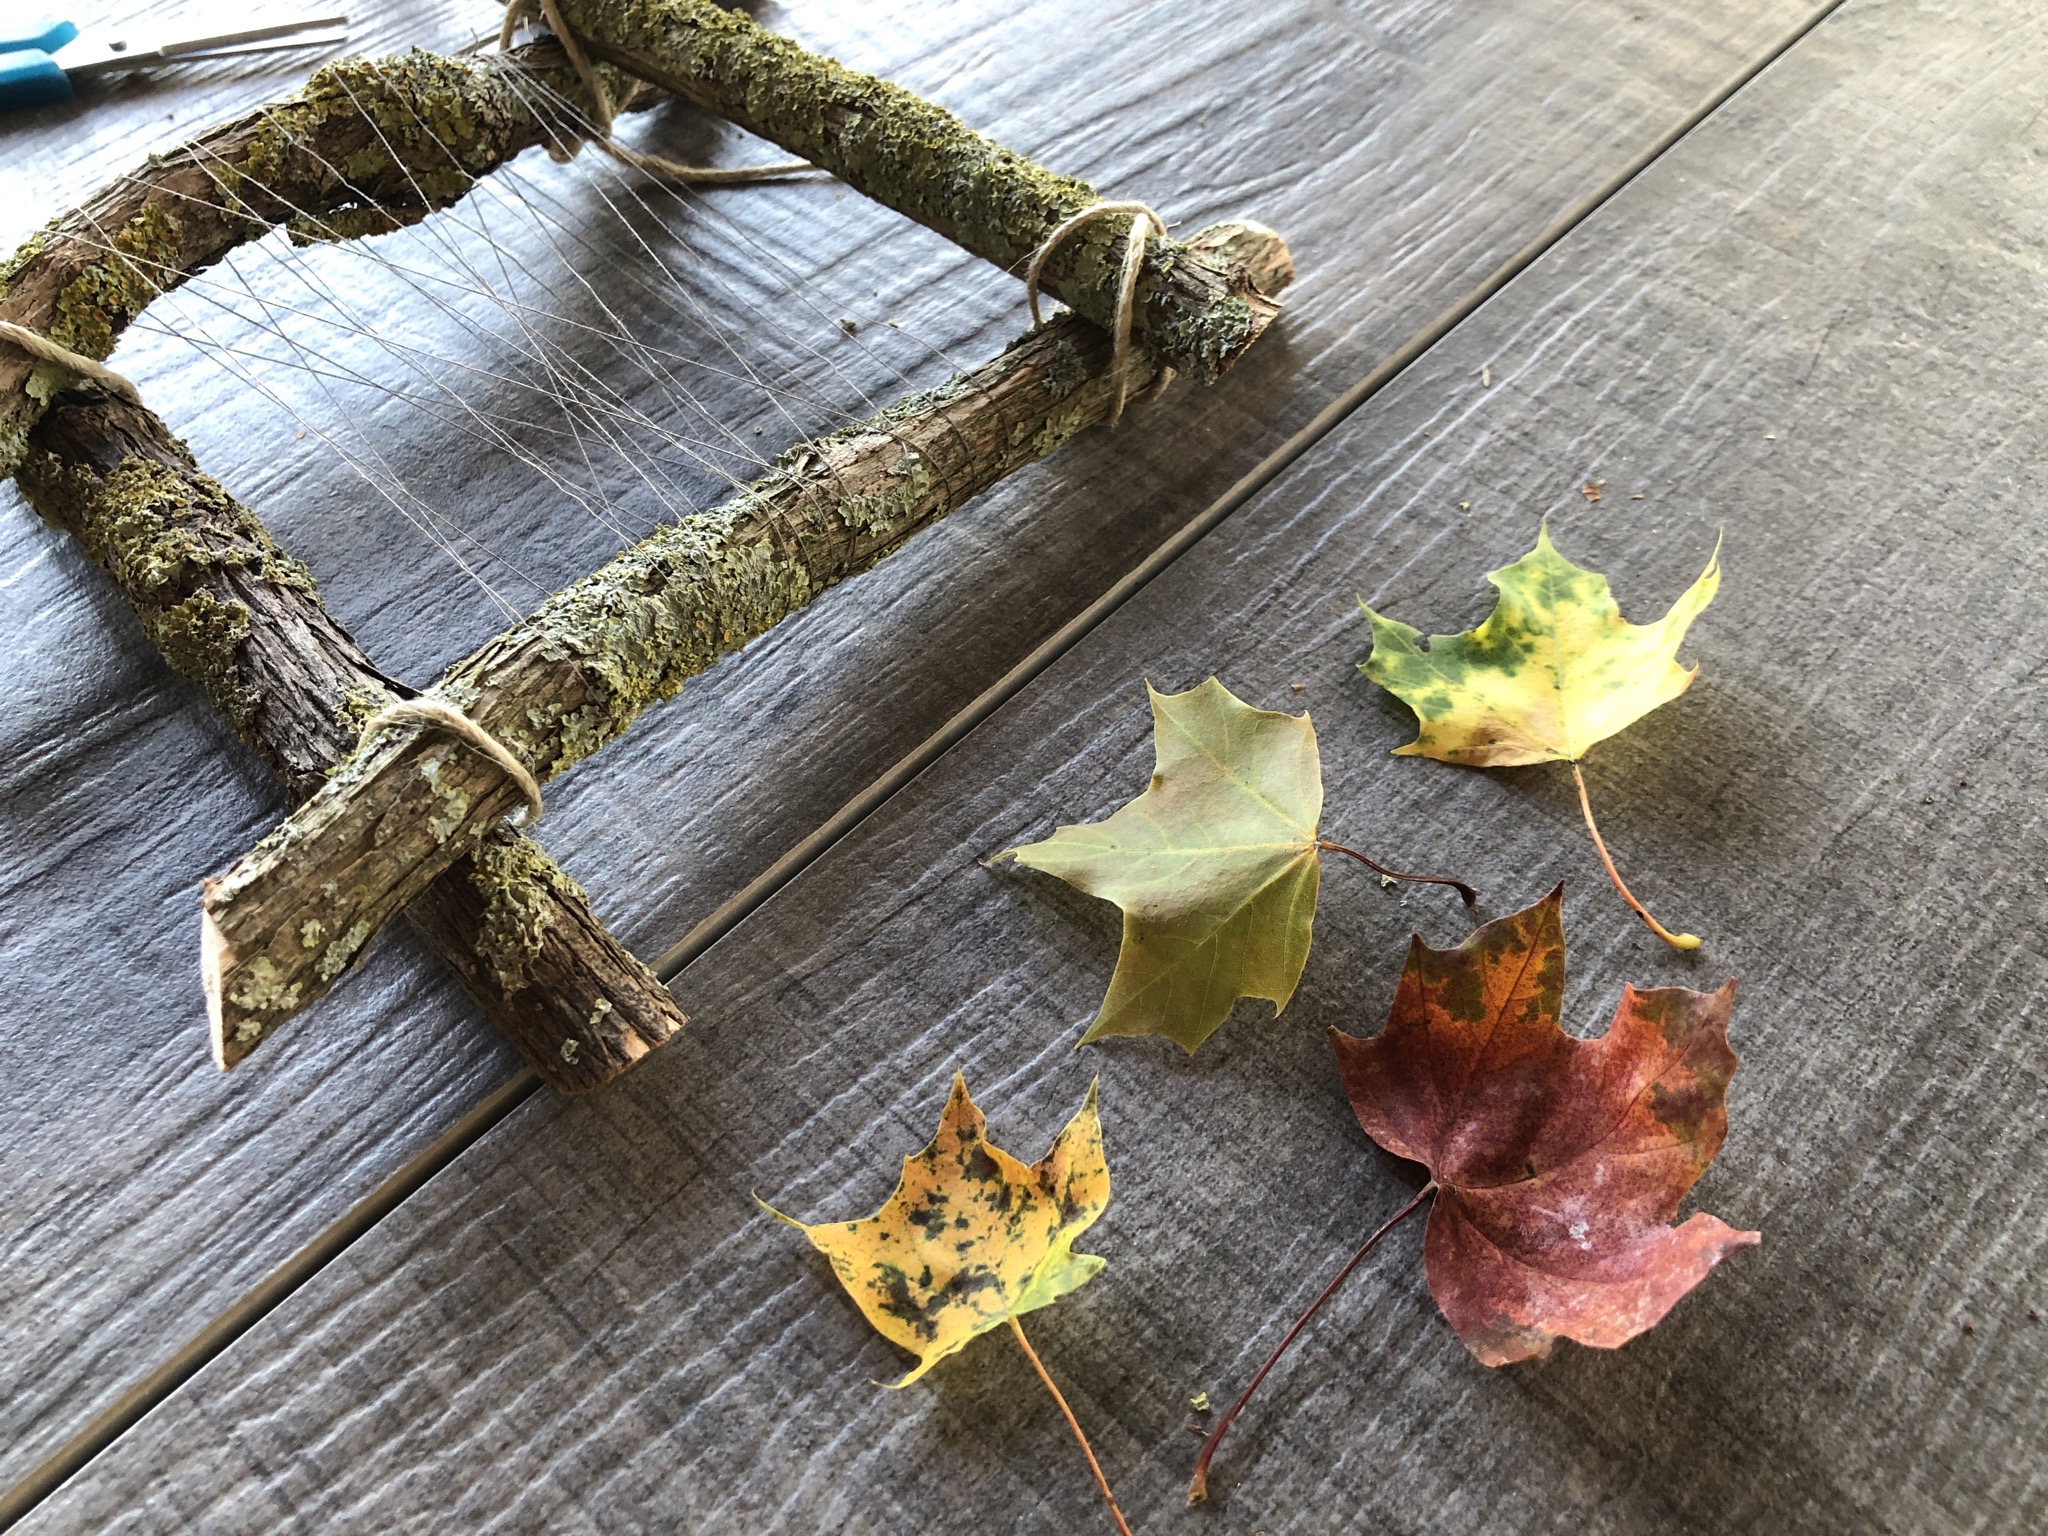 Bild zum Schritt 12 für die Kinder-Beschäftigung: 'Sammelt bunte Herbstblätter und flechtet sie in das Fadennetz ein.'